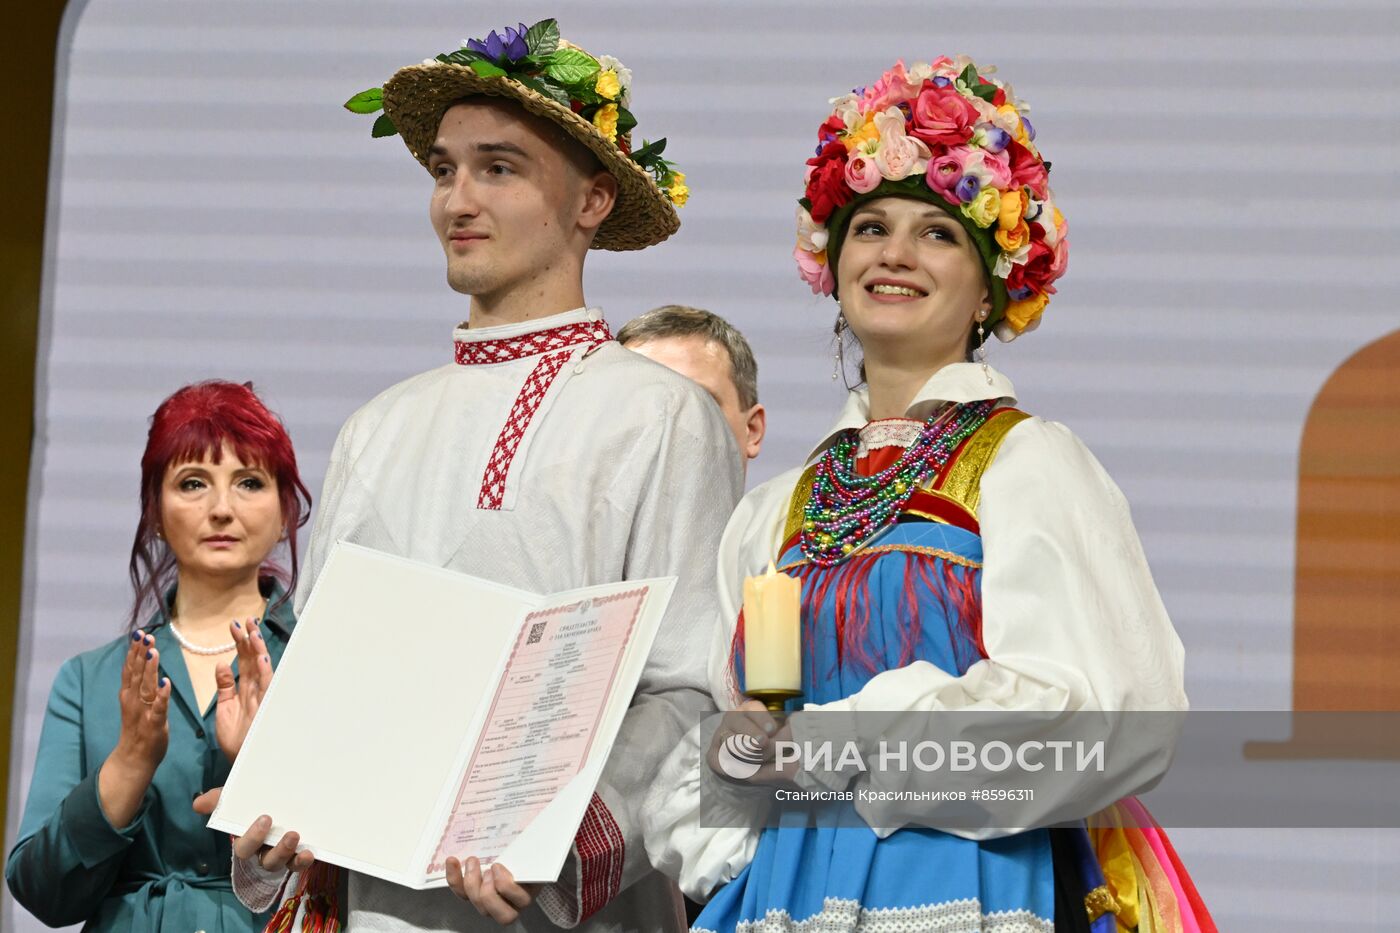 Выставка "Россия". Торжественная церемония бракосочетания пары из города Курска